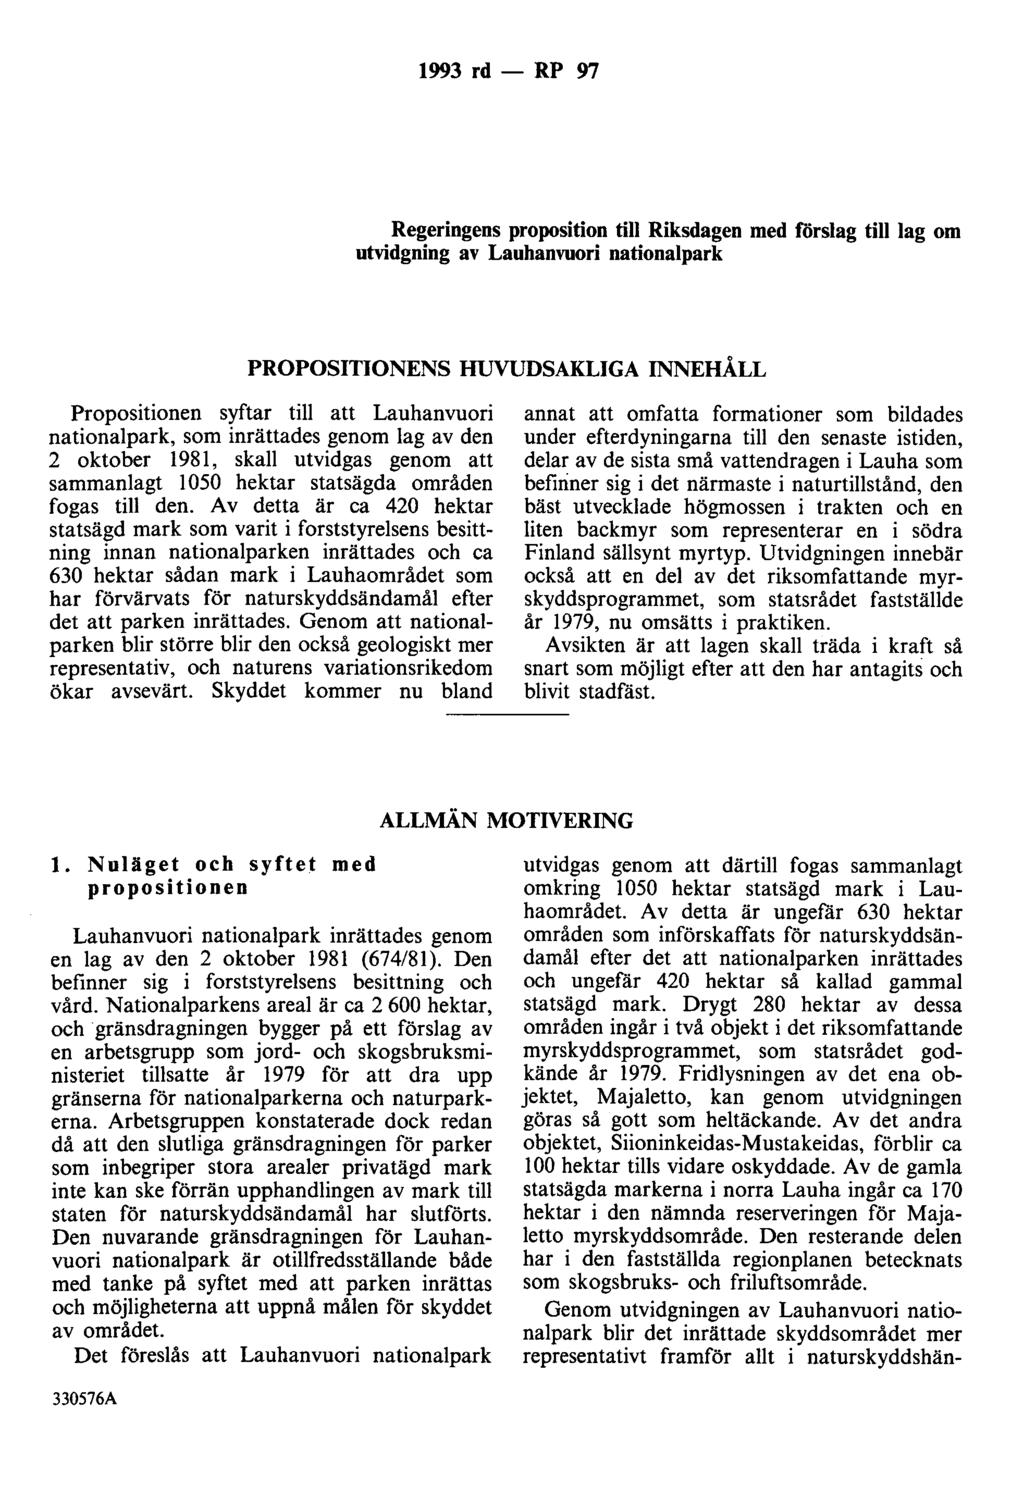 1993 rd - RP 97 Regeringens proposition till Riksdagen med förslag till lag om utvidgning av Lauhanvuori nationalpark PROPOSITIONENS HUVUDSAKLIGA INNEHÅLL Propositionen syftar till att Lauhanvuori